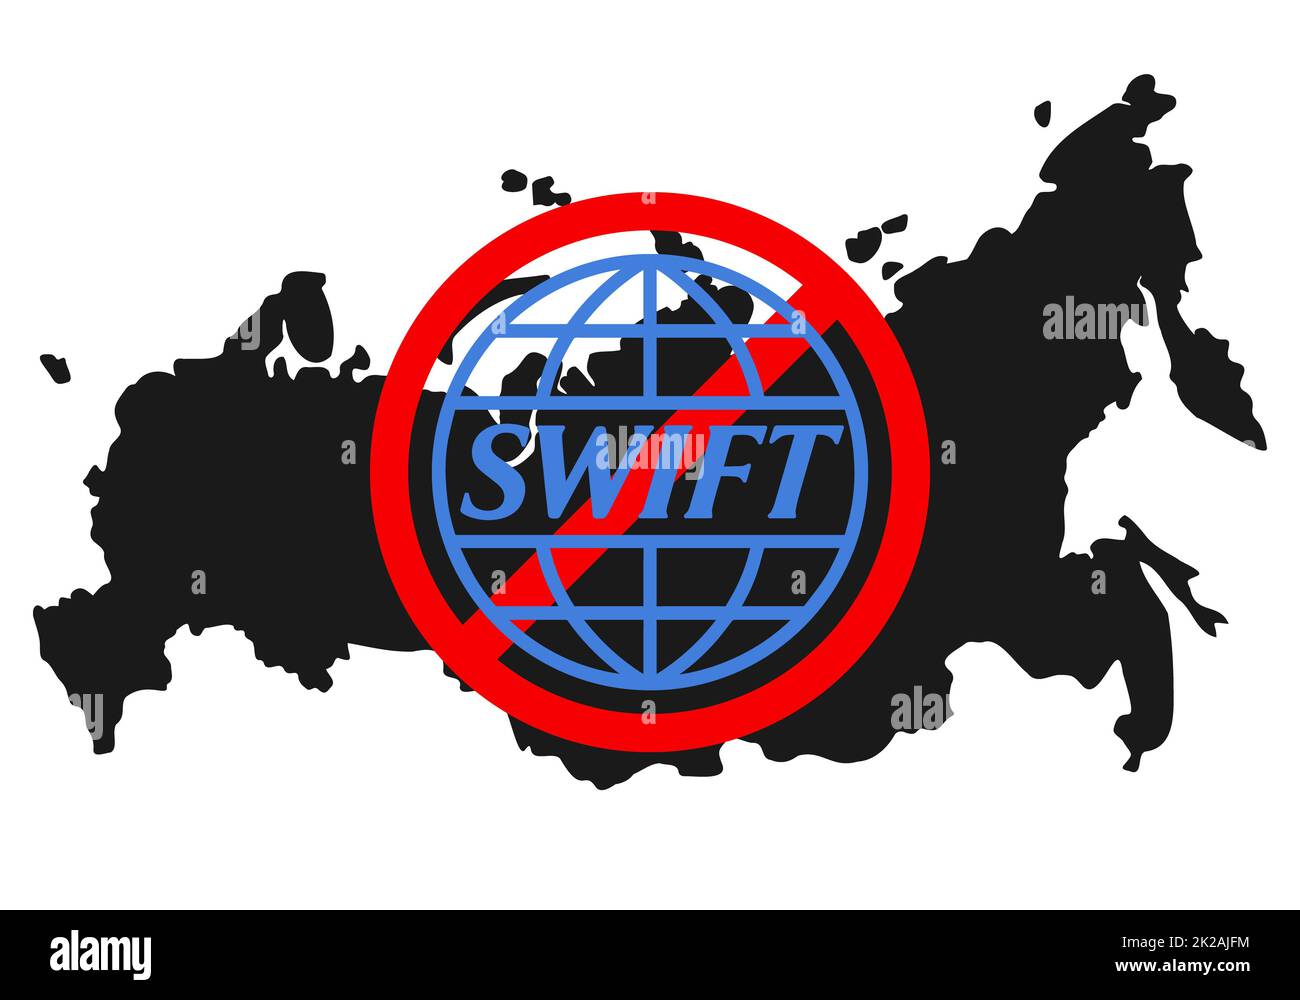 Ucraina, Rivne - Febbraio, 27 2022: Logo SWIFT sistema finanziario logo sotto il segno di divieto rosso con la mappa russa sullo sfondo. Sanzioni contro la Russia, e il distacco da SWIFT attraverso la guerra. Foto Stock